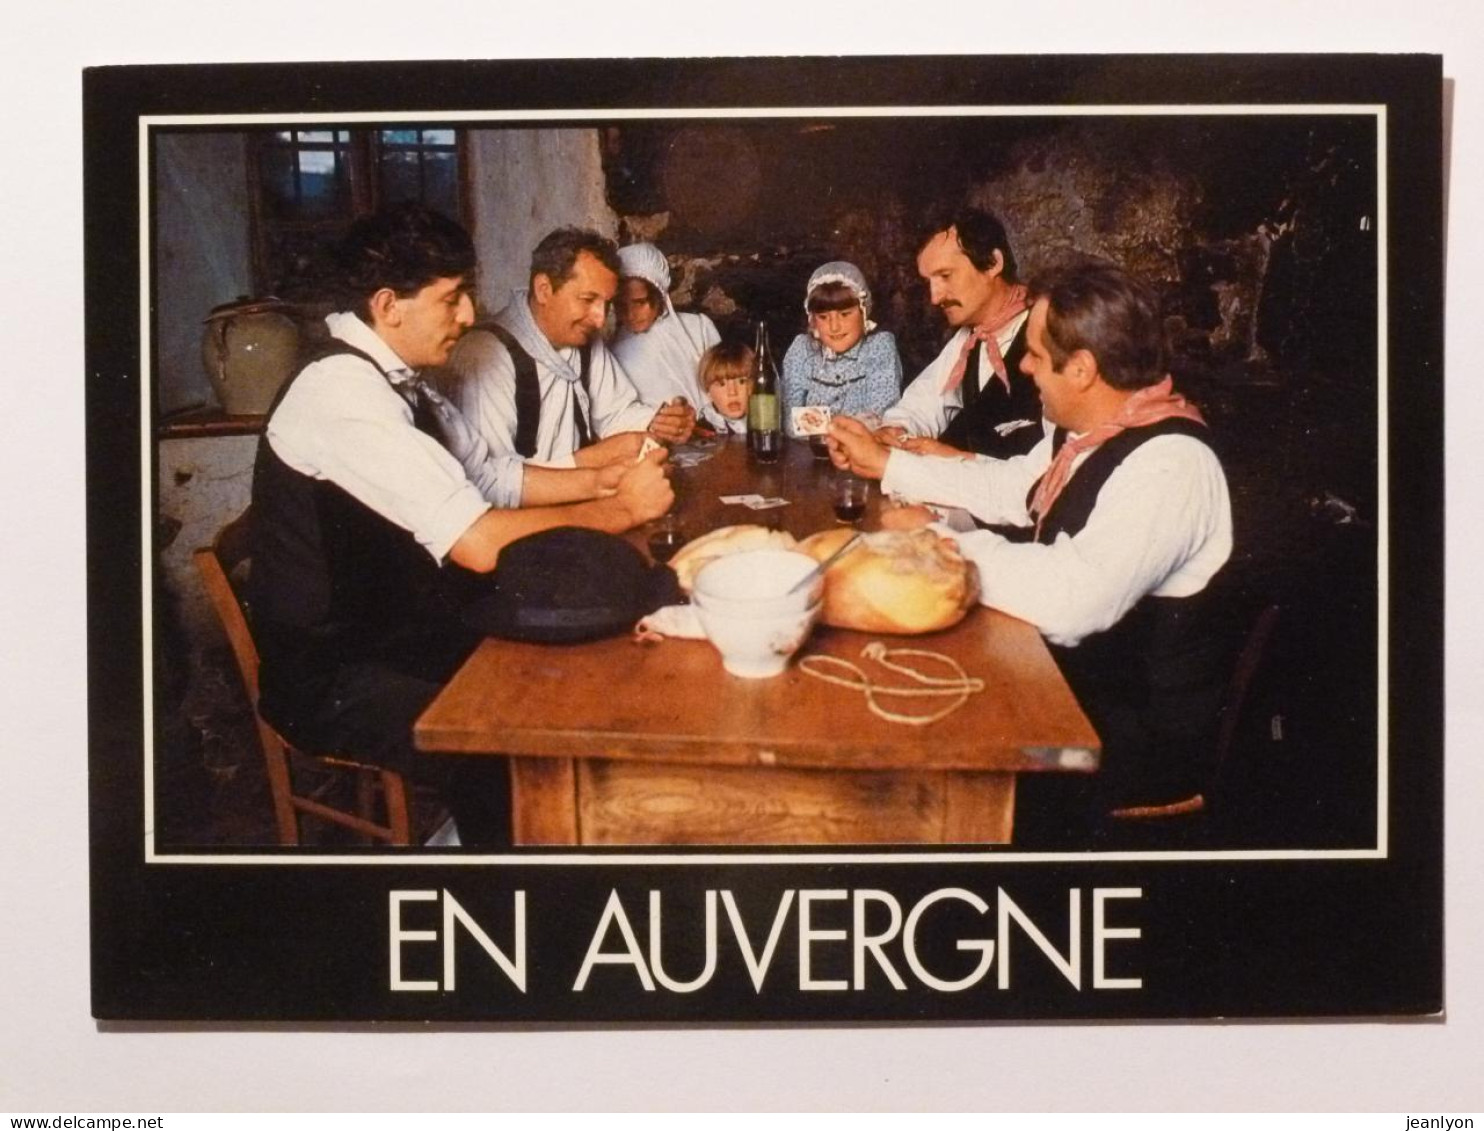 AUVERGNE - Partie De Cartes / Table Avec Bouteille De Vin - Cartas